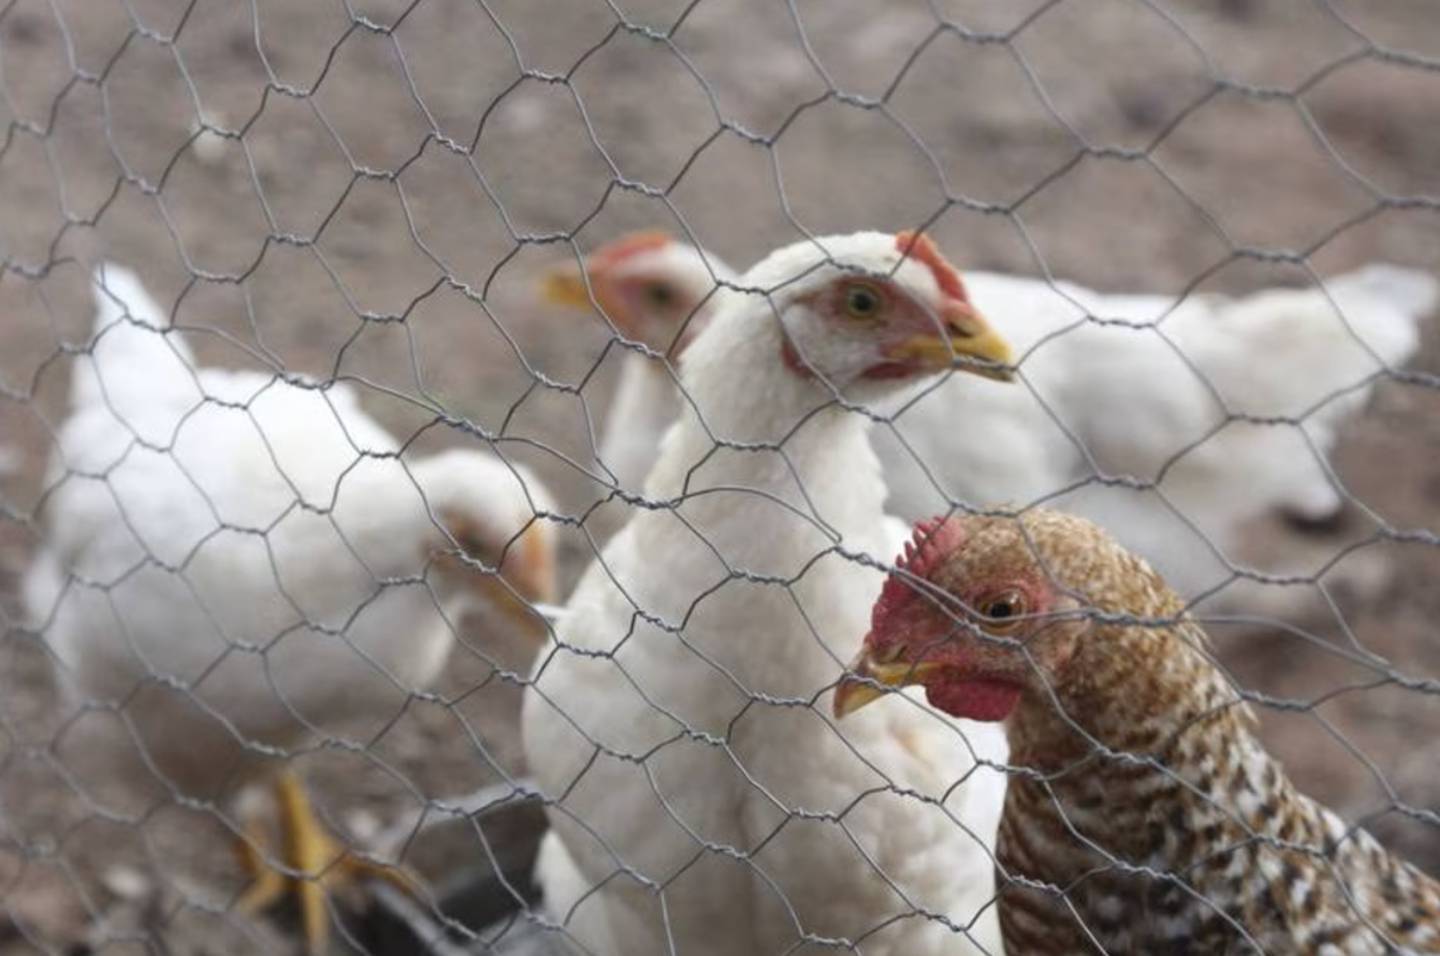 La detección fue producto de la vigilancia epidemiológica activa para influenza aviar de la Senasica